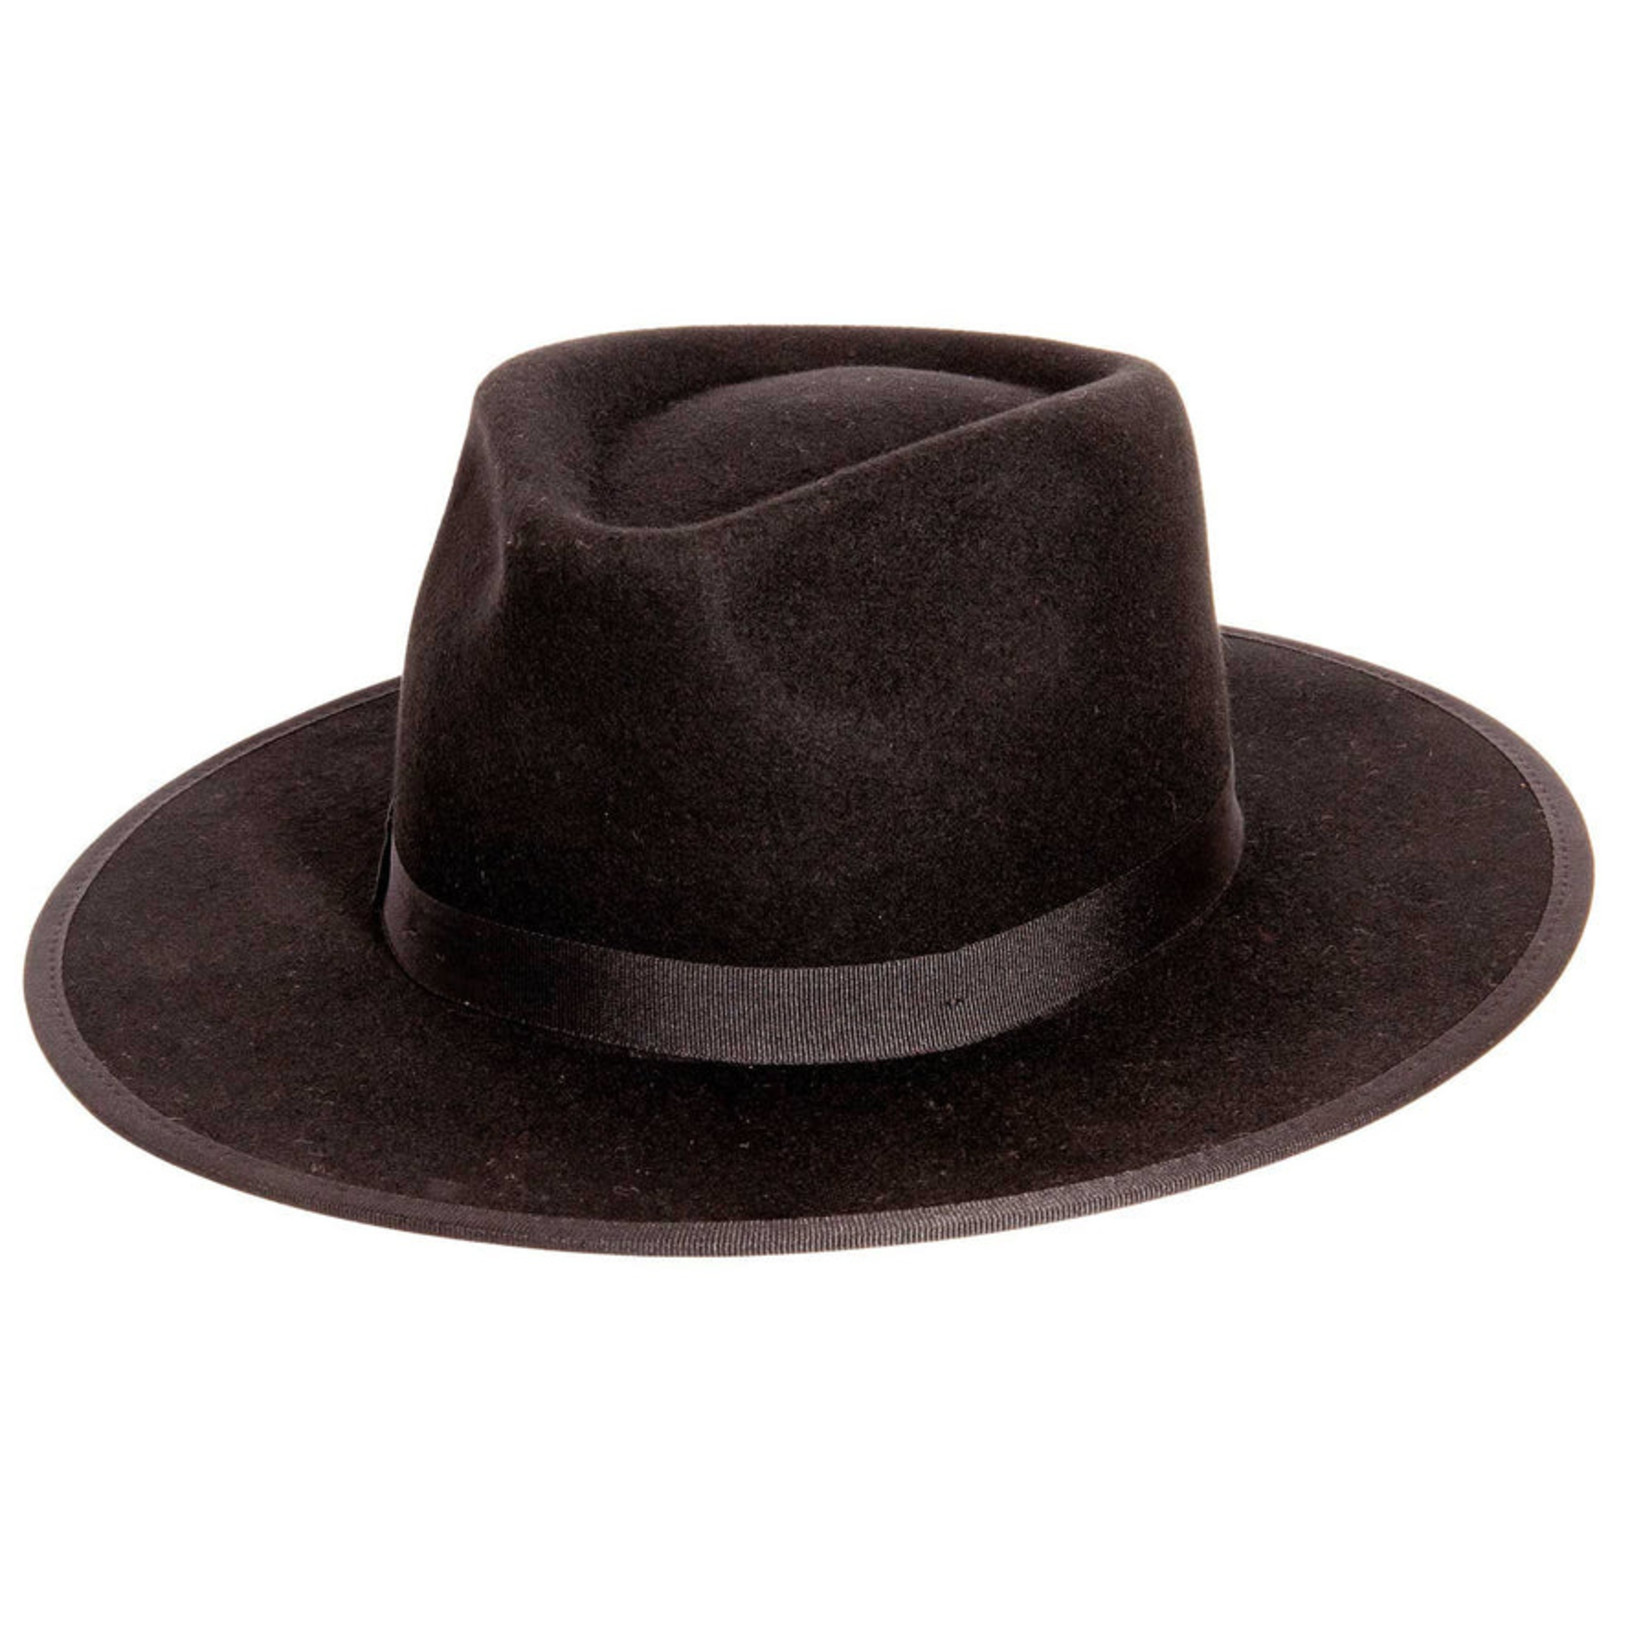 American Hat Makers Bondi Fedora Felt